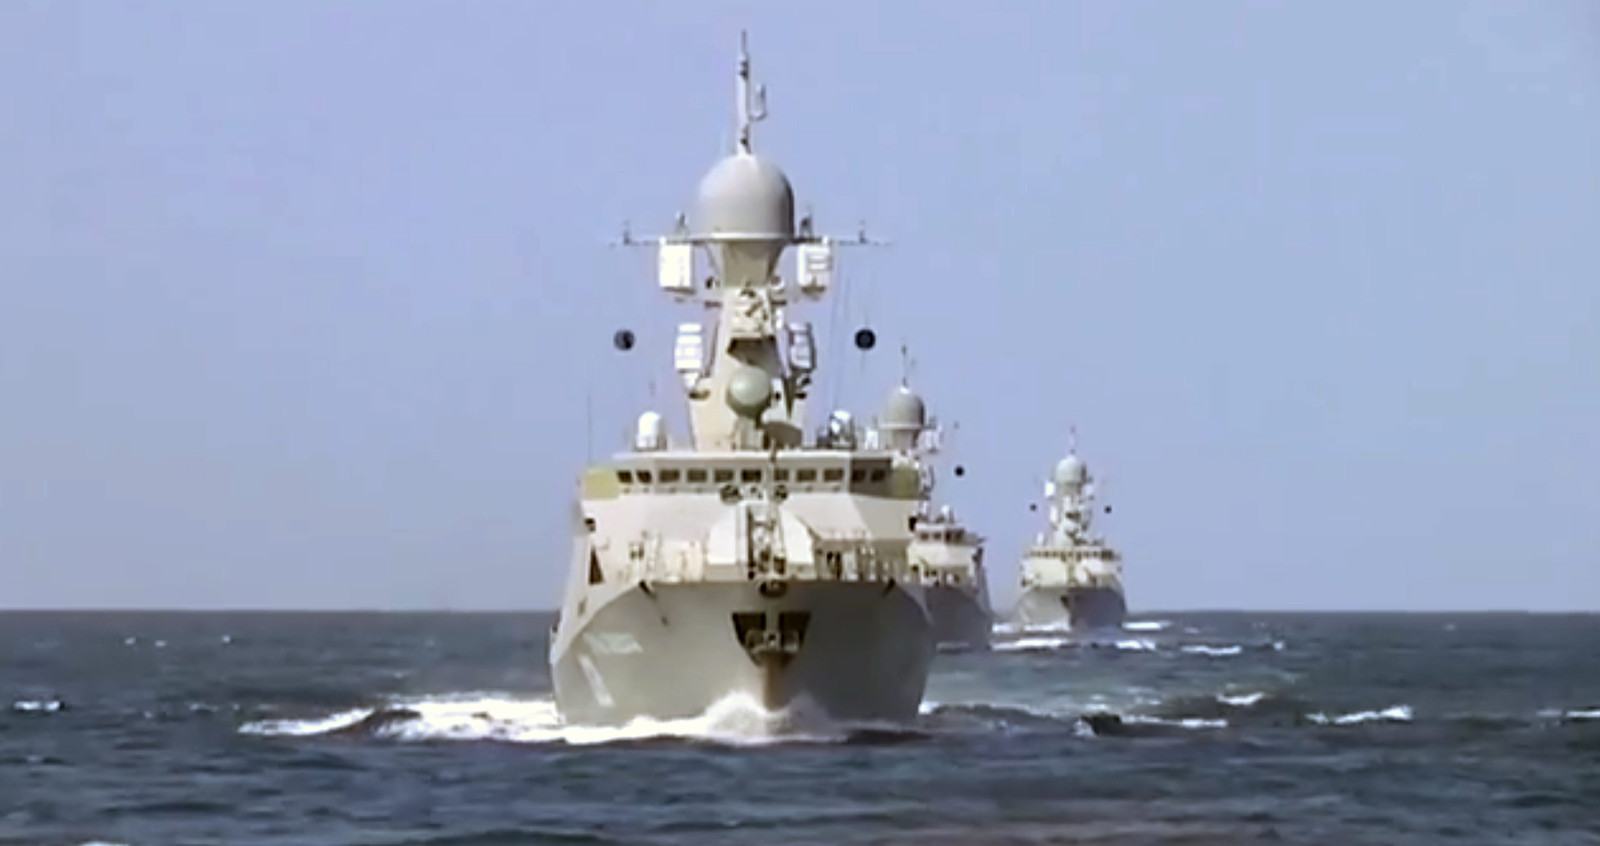 Het Russische ministerie van Defensie verspreidde foto's van de marineschepen waarvan 26 kruisraketten zijn afgevuurd. De schepen zijn gelegen in de Kaspische Zee.